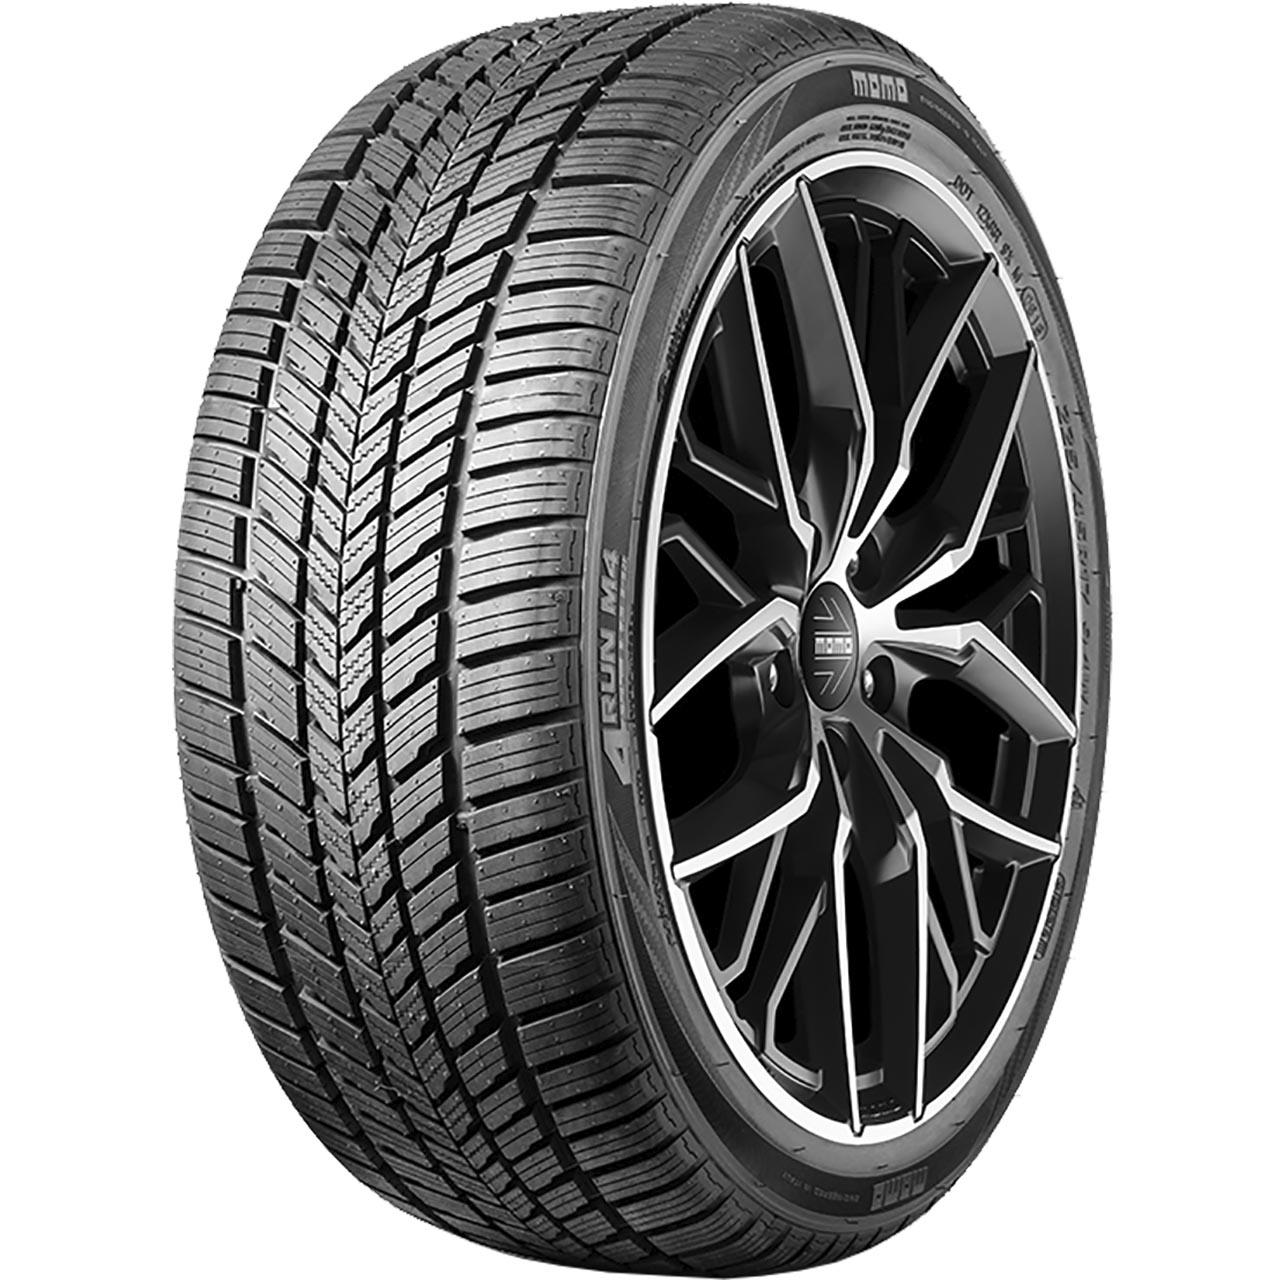 Momo Tire M 4 Four Season 155/65R14 75T